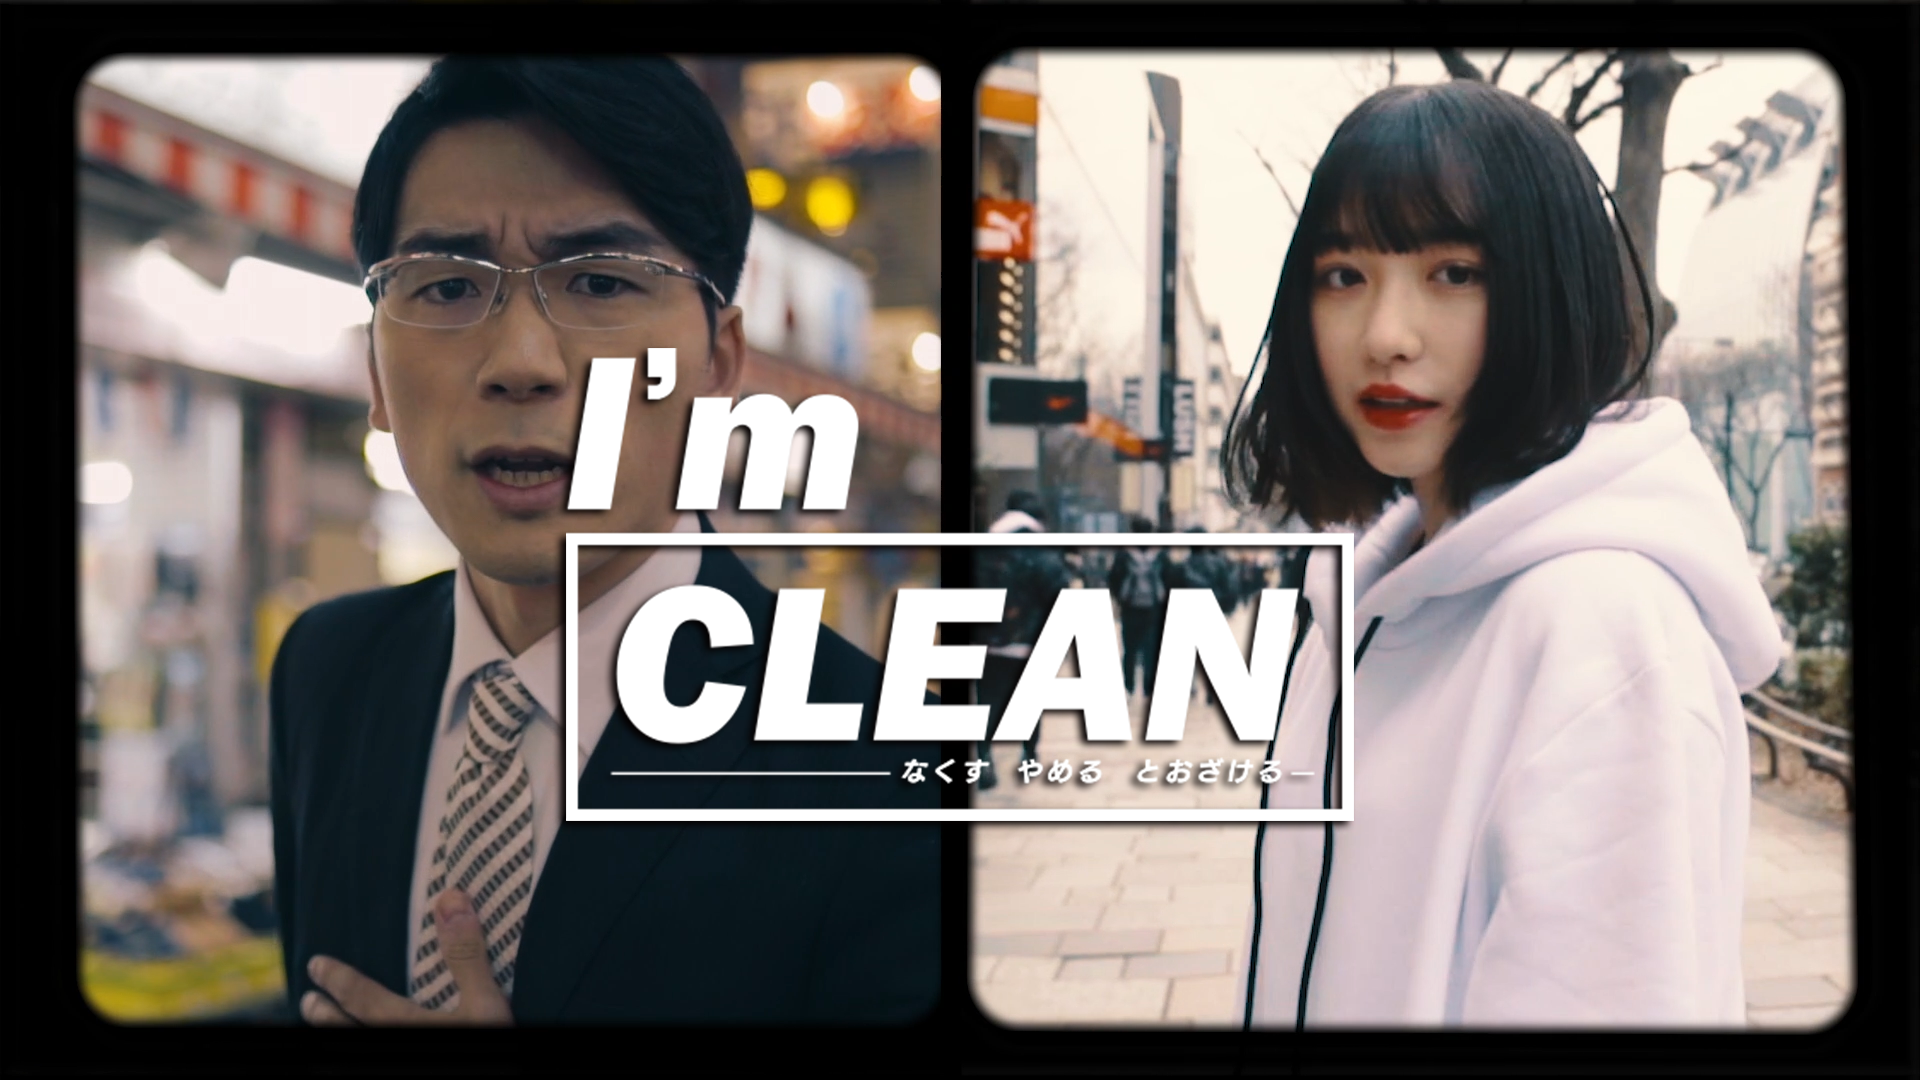 【警察庁】違法大麻撲滅キャンペーン「I'm CLEAN－なくす やめる とおざける－」を公開しました。